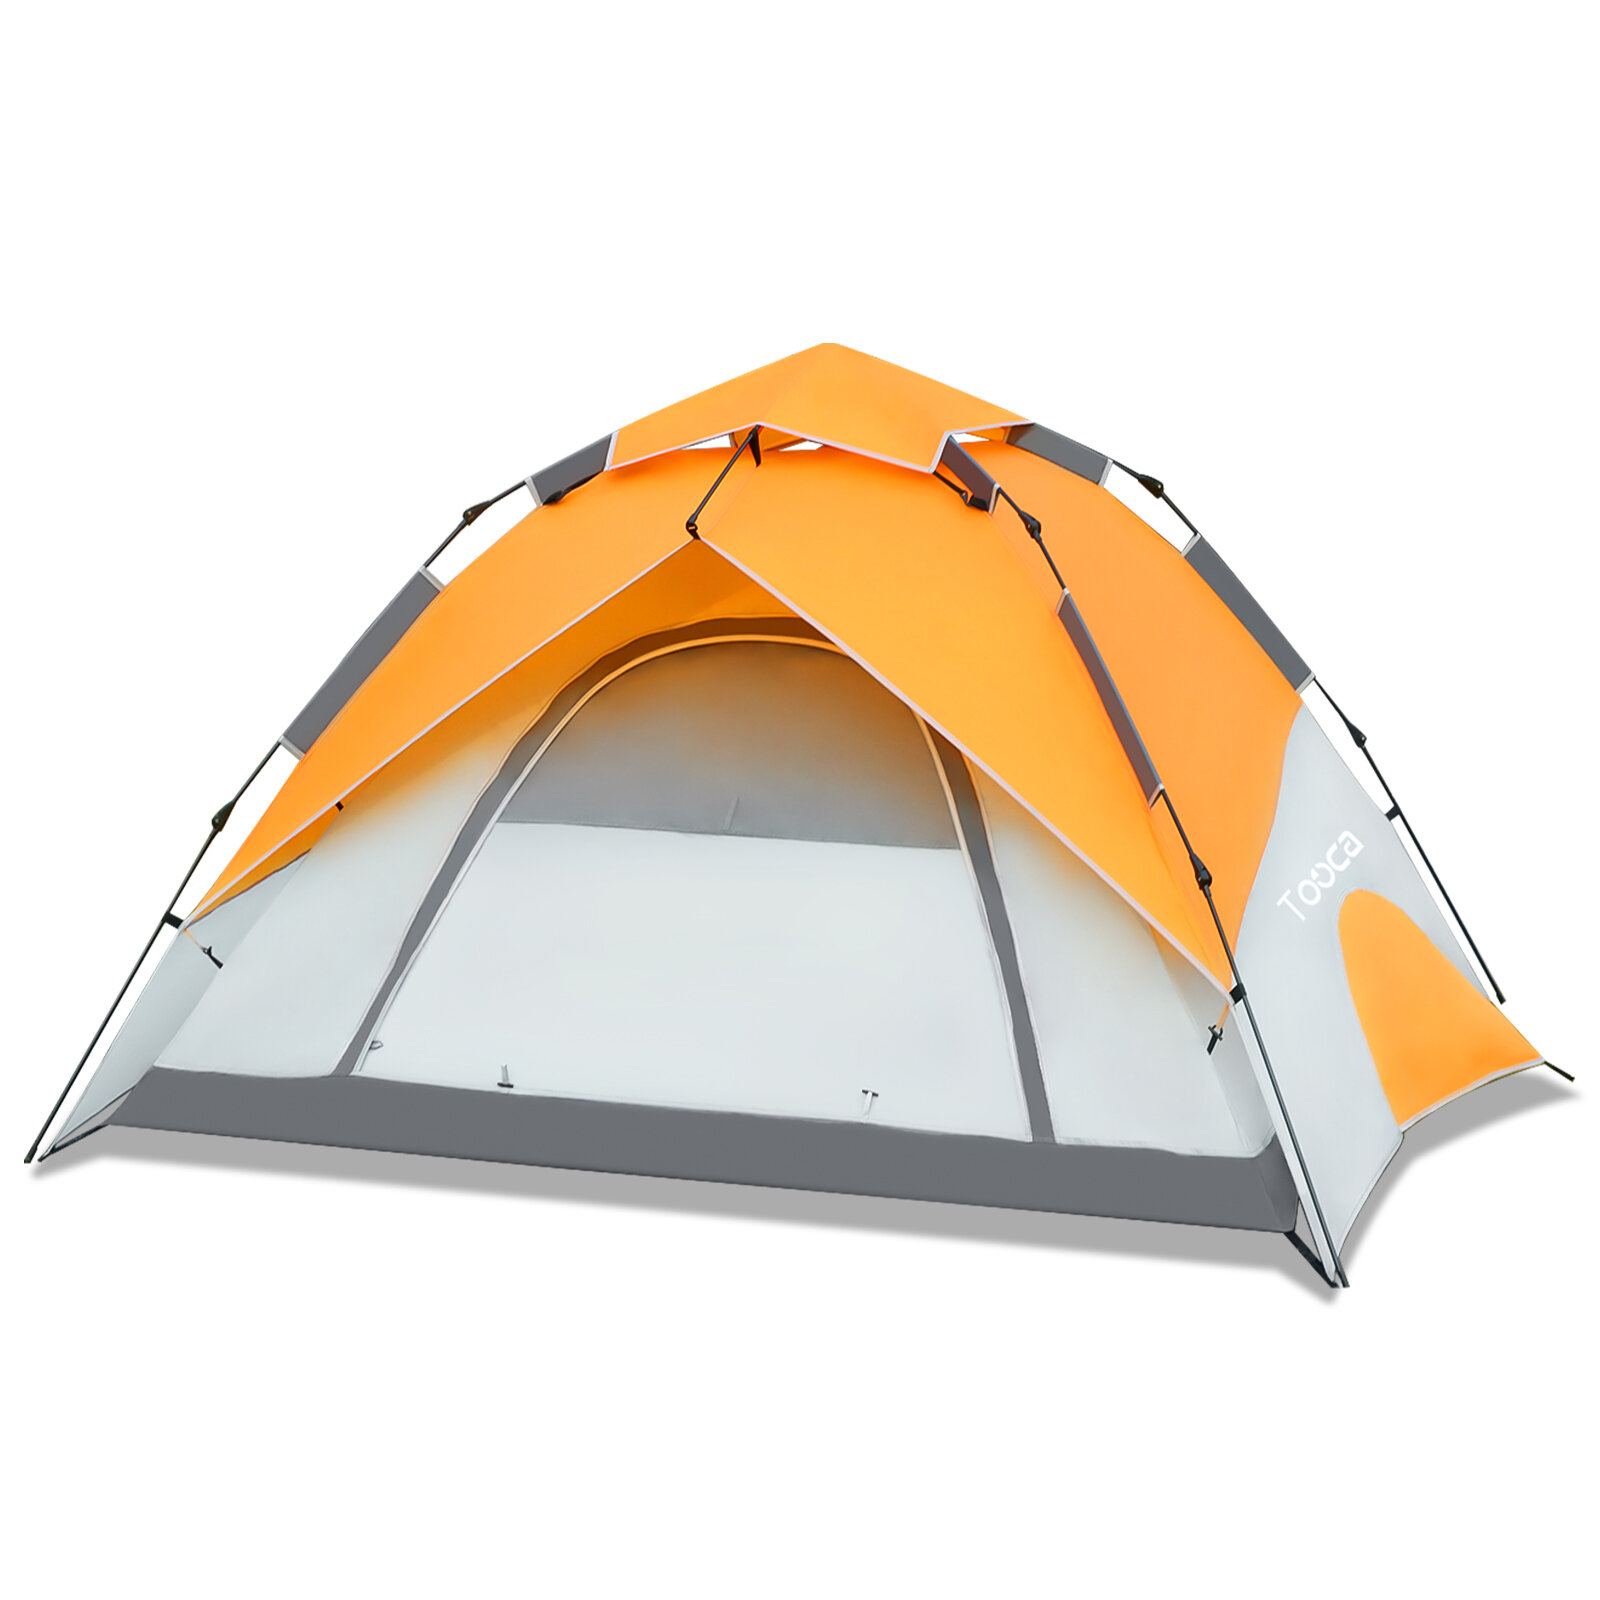 Namiot kempingowy Tooca dla 4 osób, natychmiastowy montaż, automatyczny namiot kopułowy, wodoodporny, wiatroszczelny, ochrona przed słońcem.